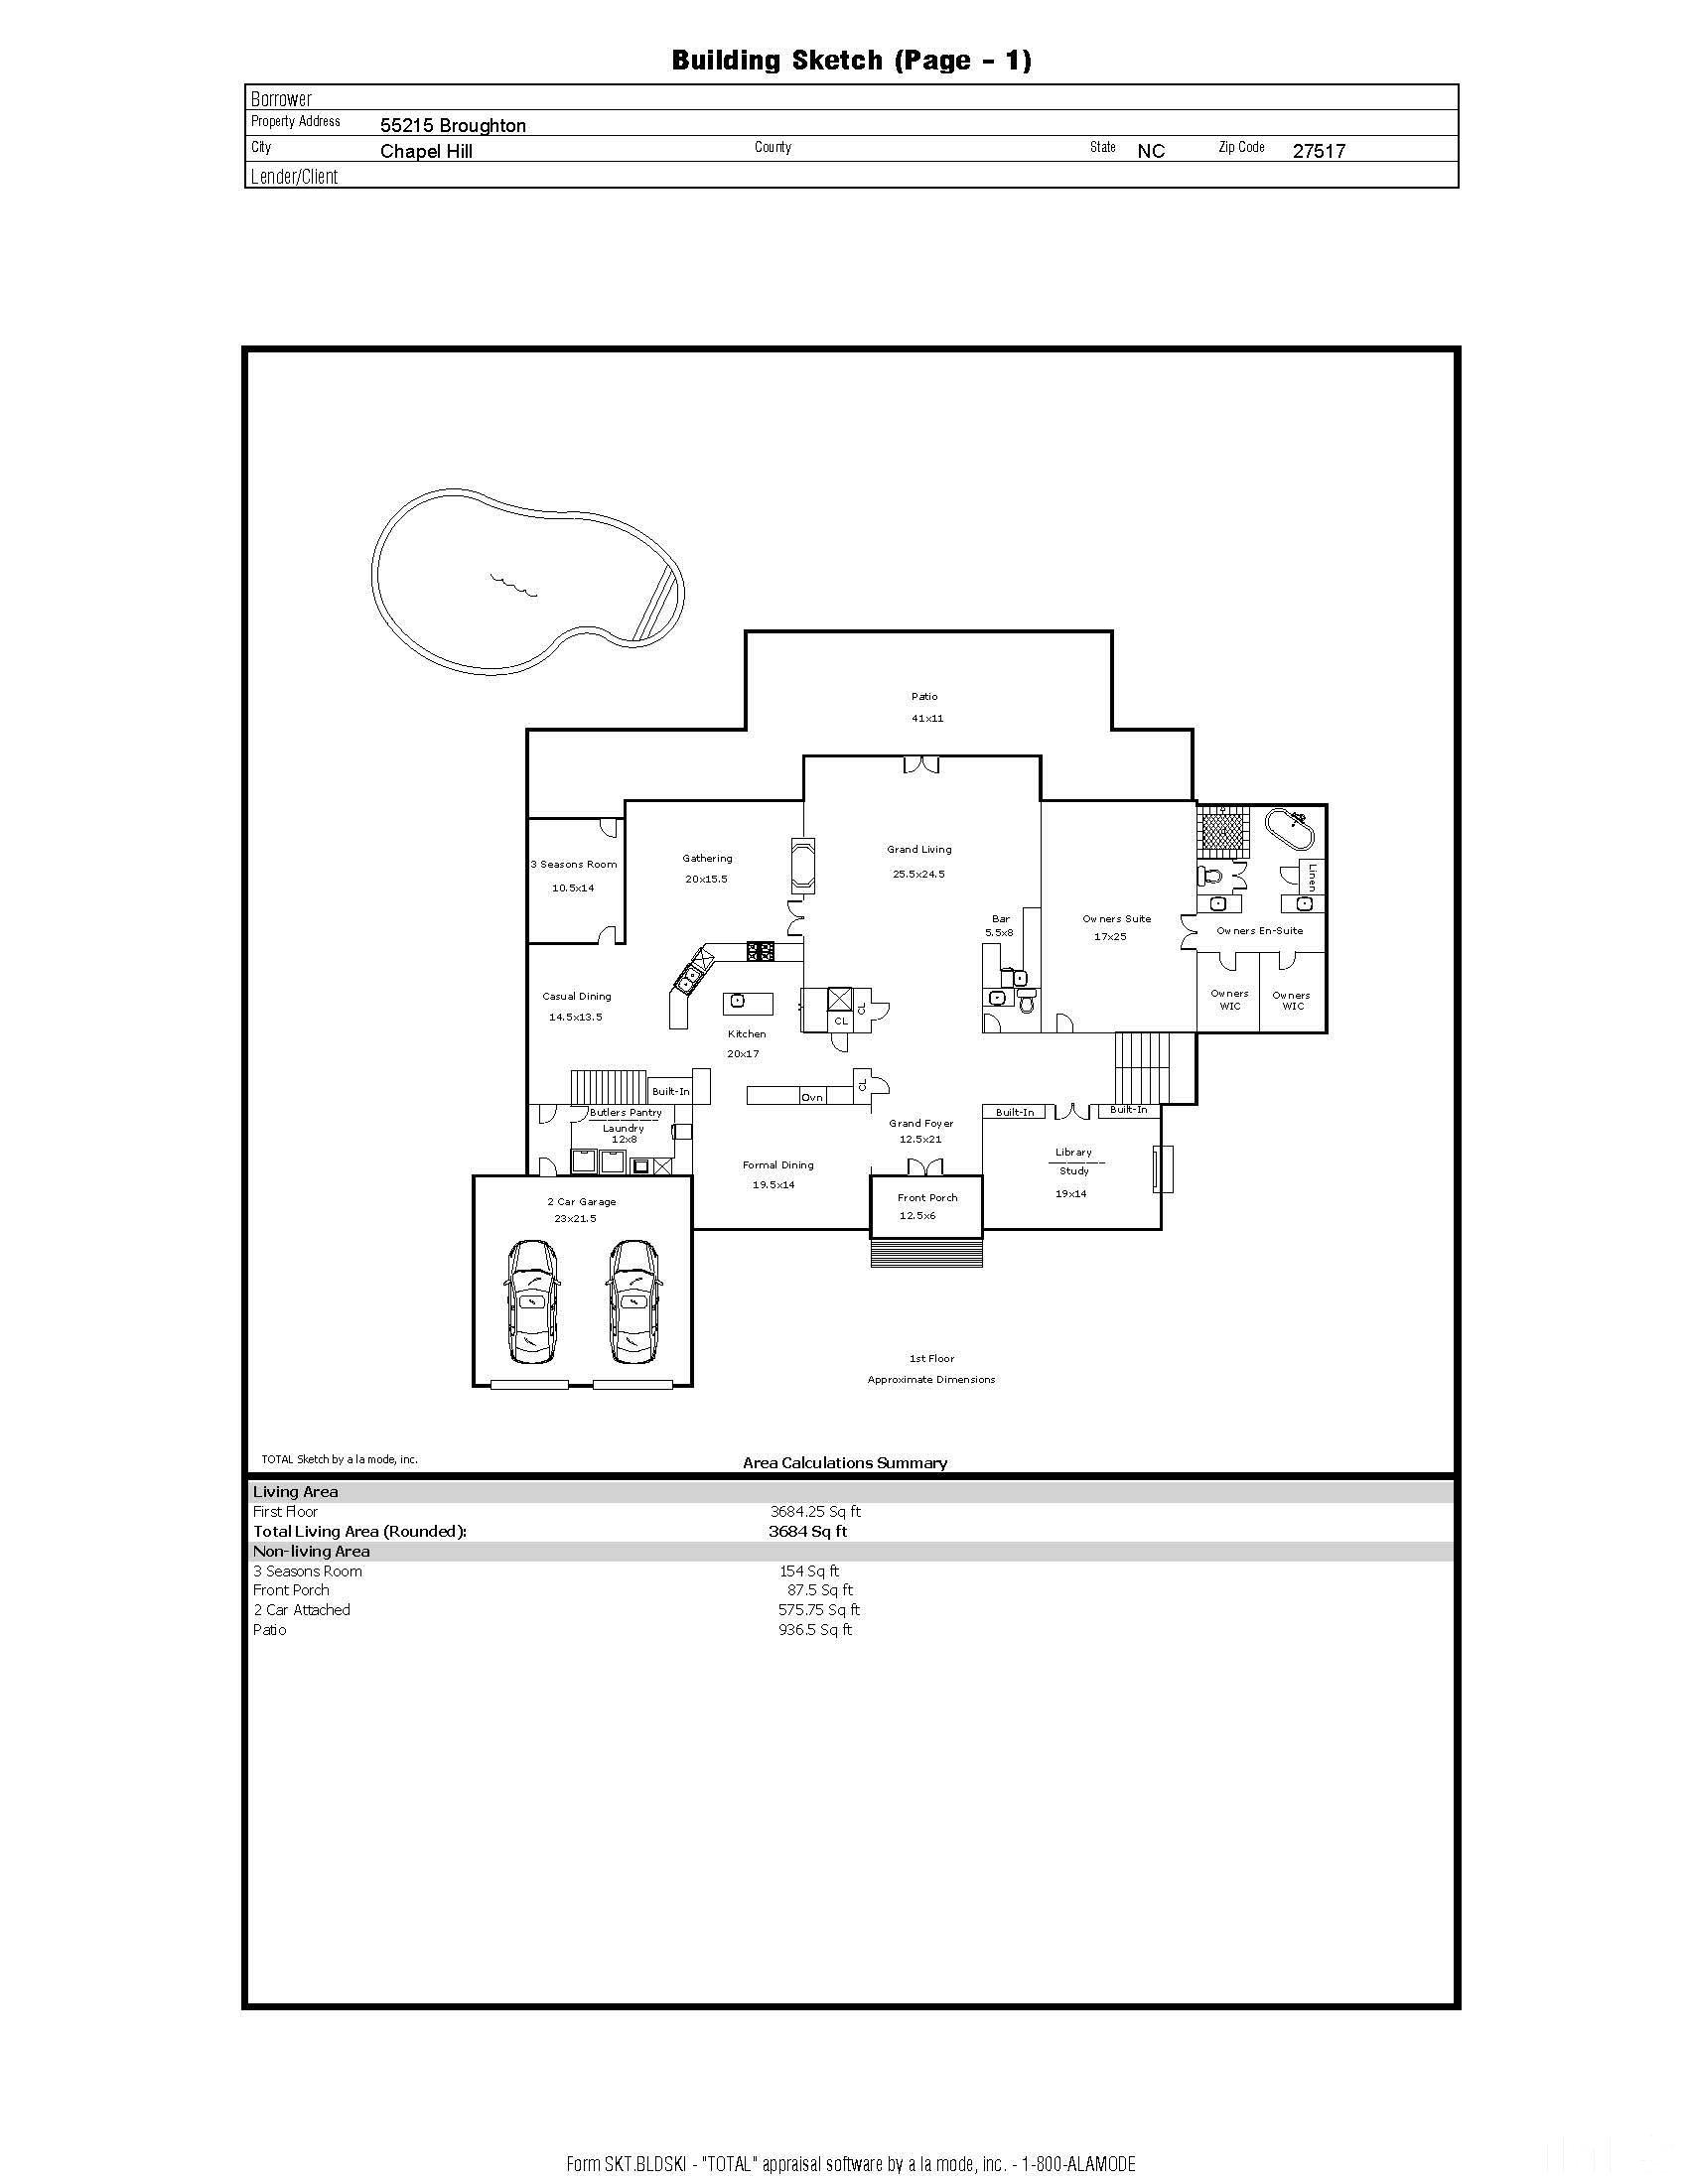 main floor floor plan